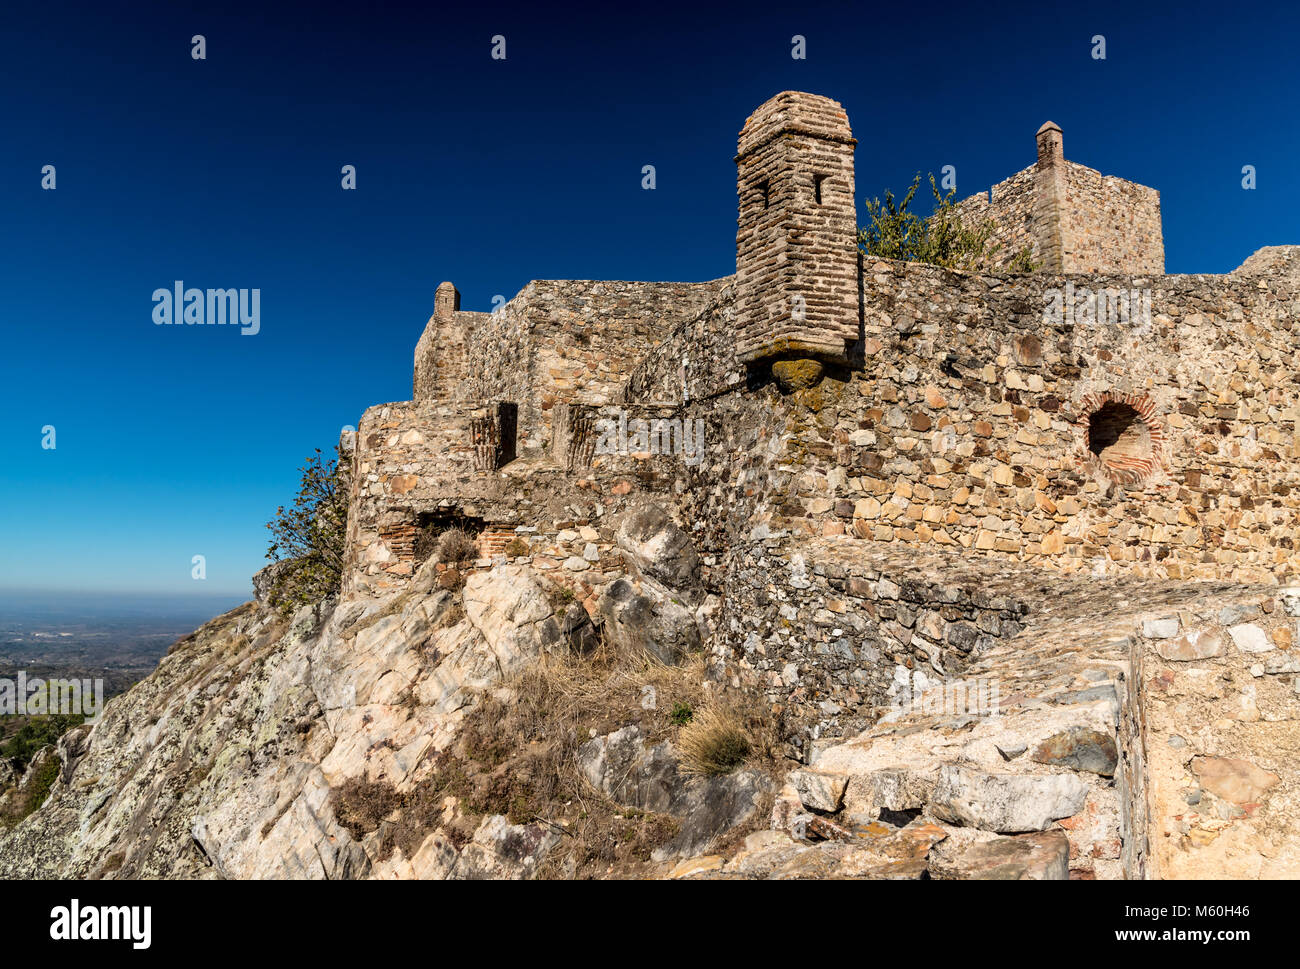 Castello moresco nel villaggio di collina di Marvao nella regione dell'Alentejo in Portogallo Foto Stock